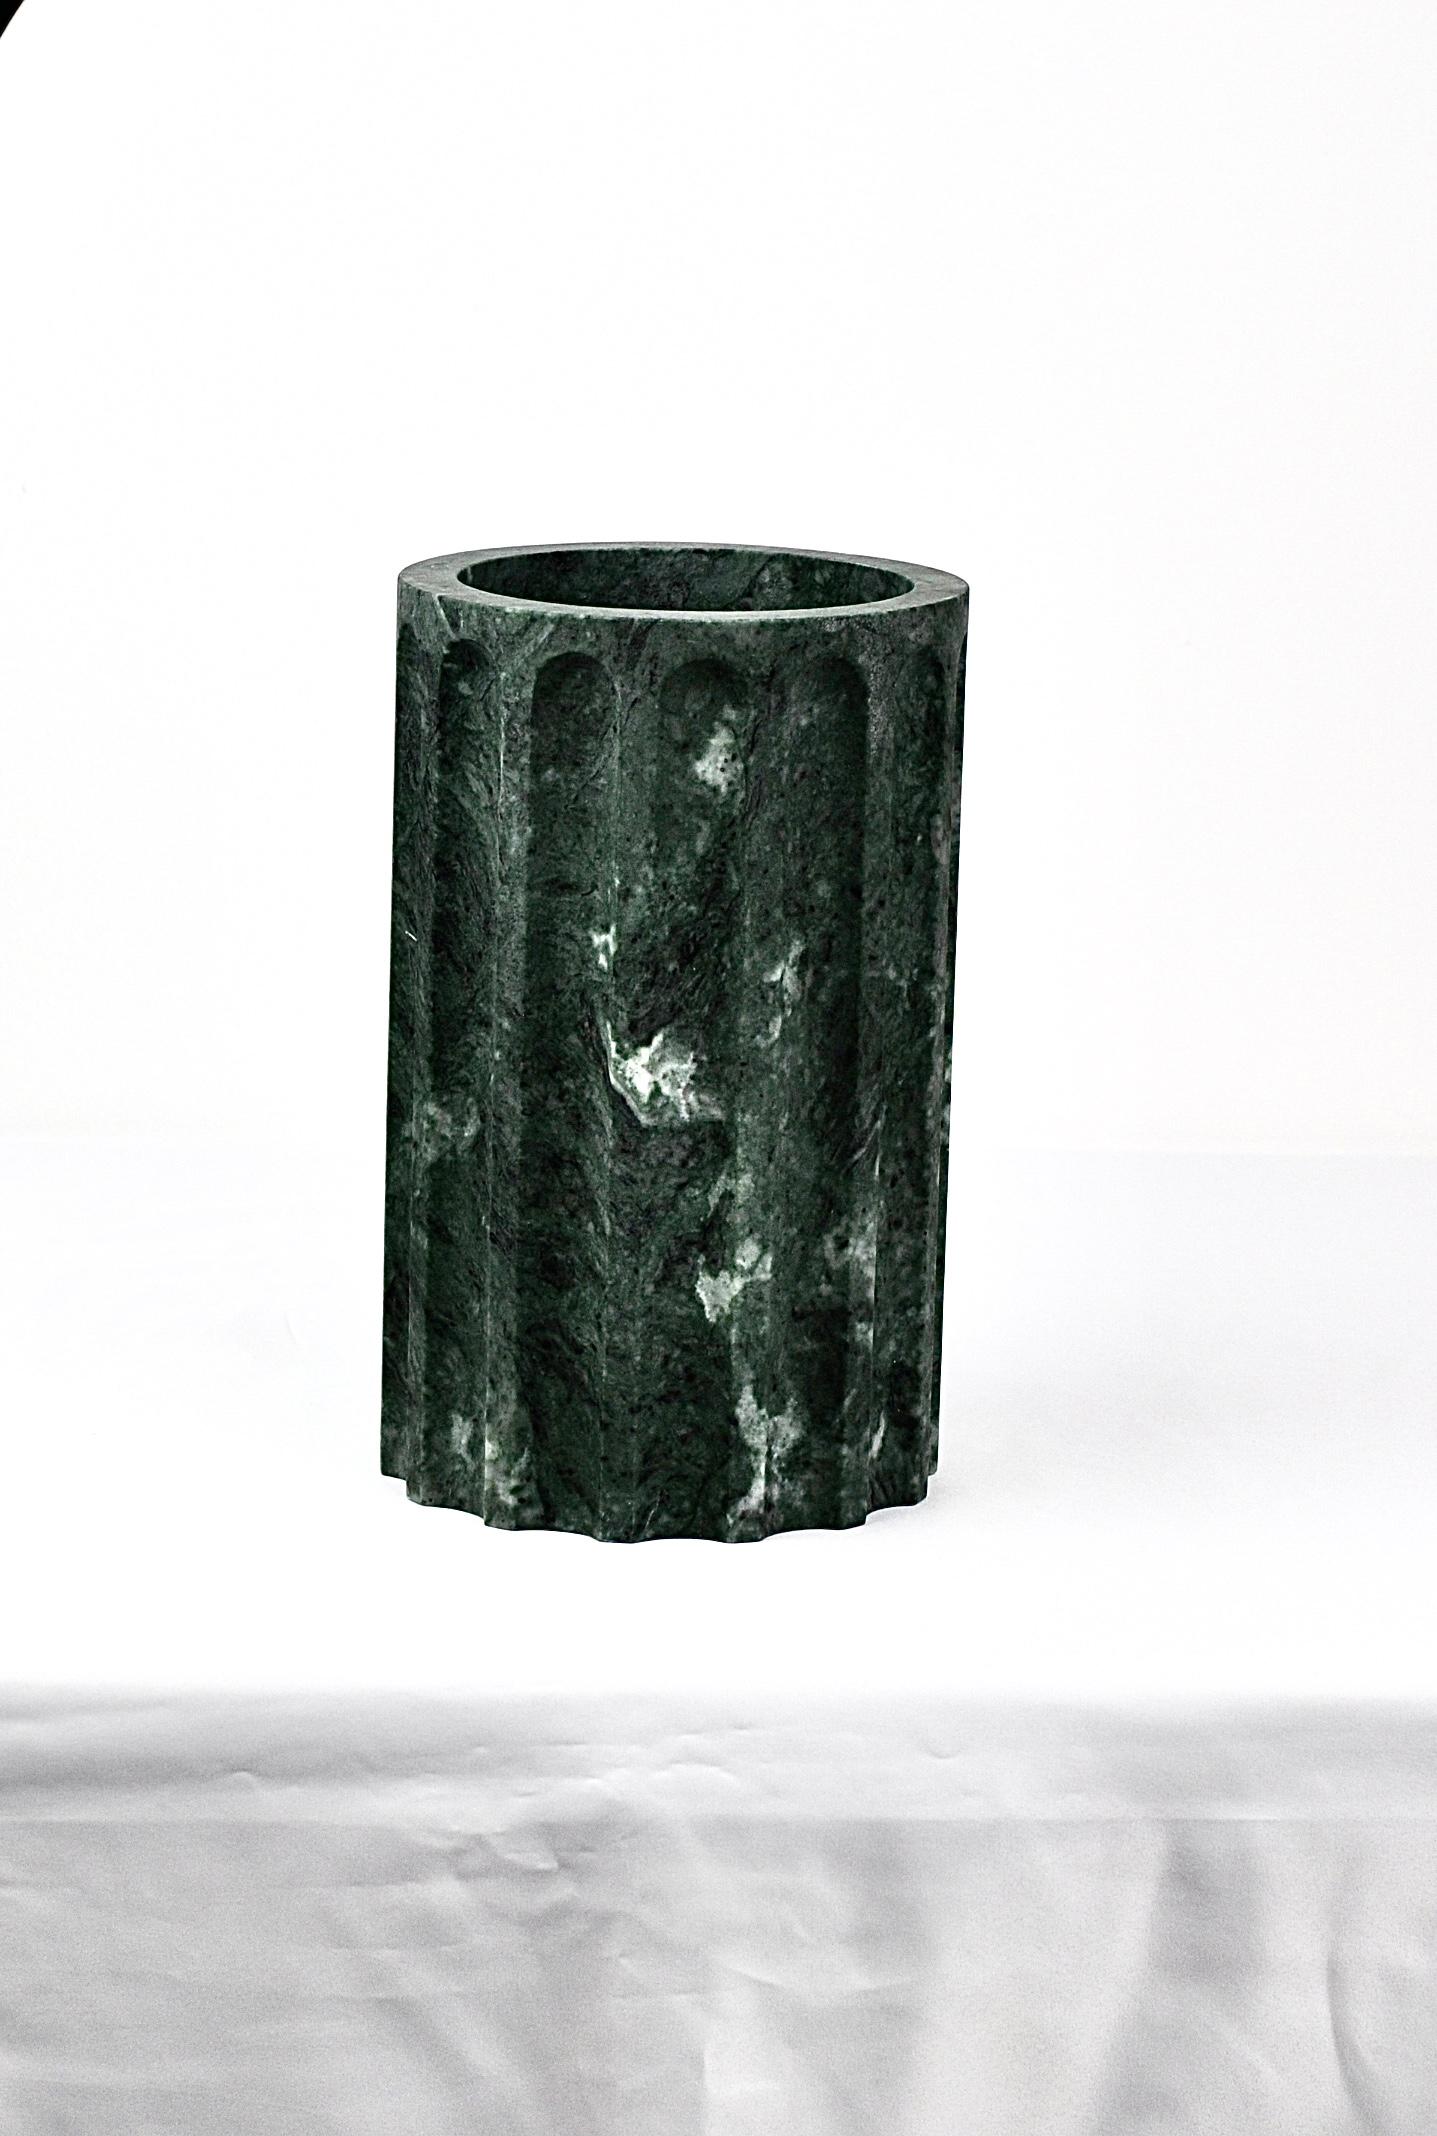 Base du vase colonne en trois parties en marbre paonazzo, noir, vert ou travertin. Les pièces peuvent être vendues individuellement et sont multifonctionnelles. Collectional réalisée en collaboration avec SuonareStella.
Cet objet donne une touche